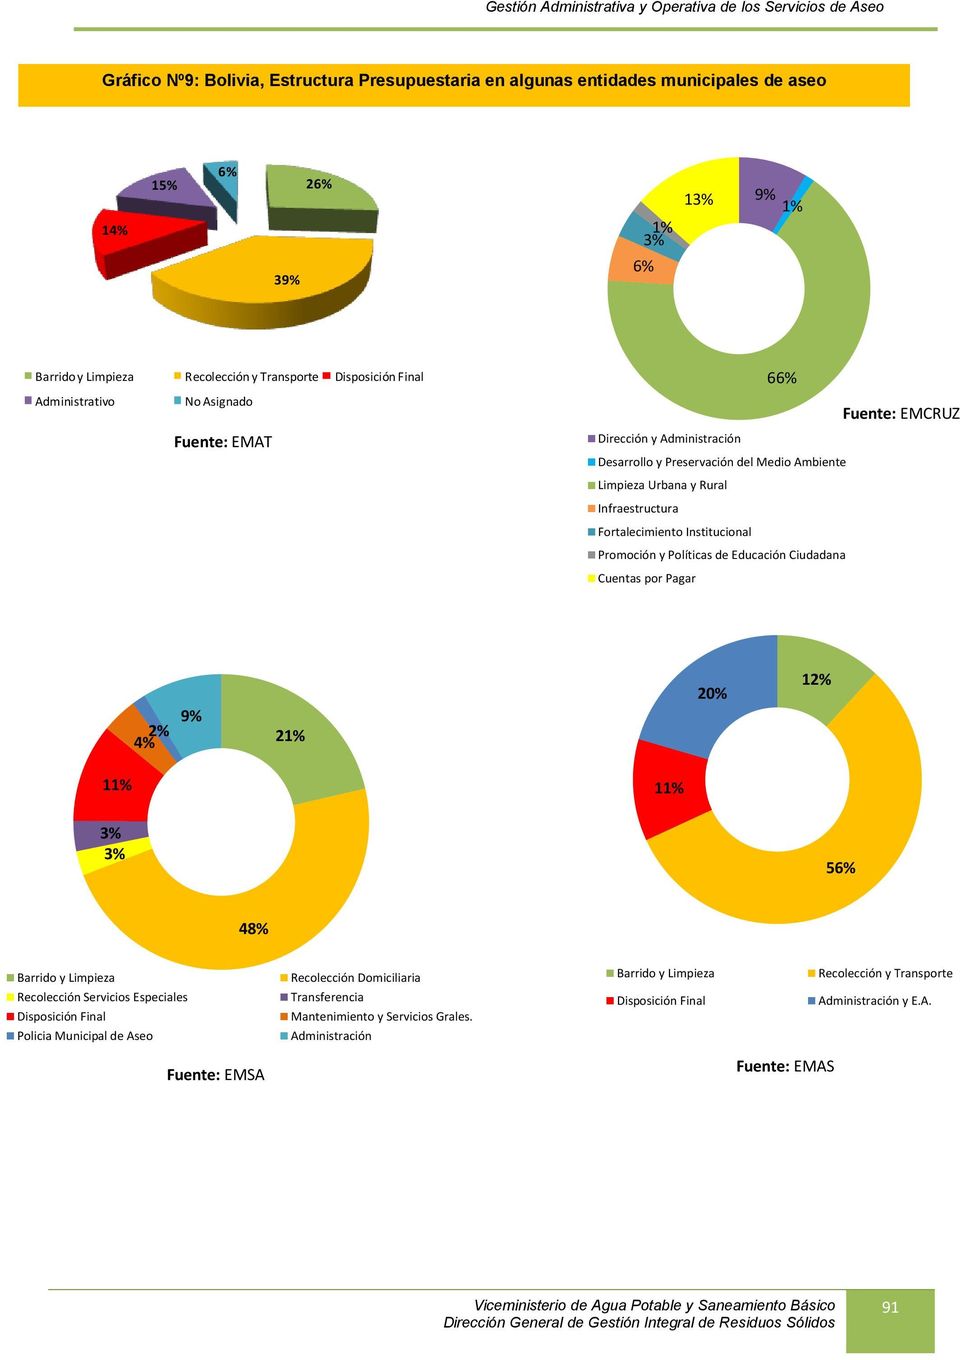 Infraestructura Fortalecimiento Institucional Promoción y Políticas de Educación Ciudadana Cuentas por Pagar 66% Fuente: EMCRUZ 2% 9% 4% 21% 20% 12% 11% 11% 3% 3% 56% 48% Barrido y Limpieza